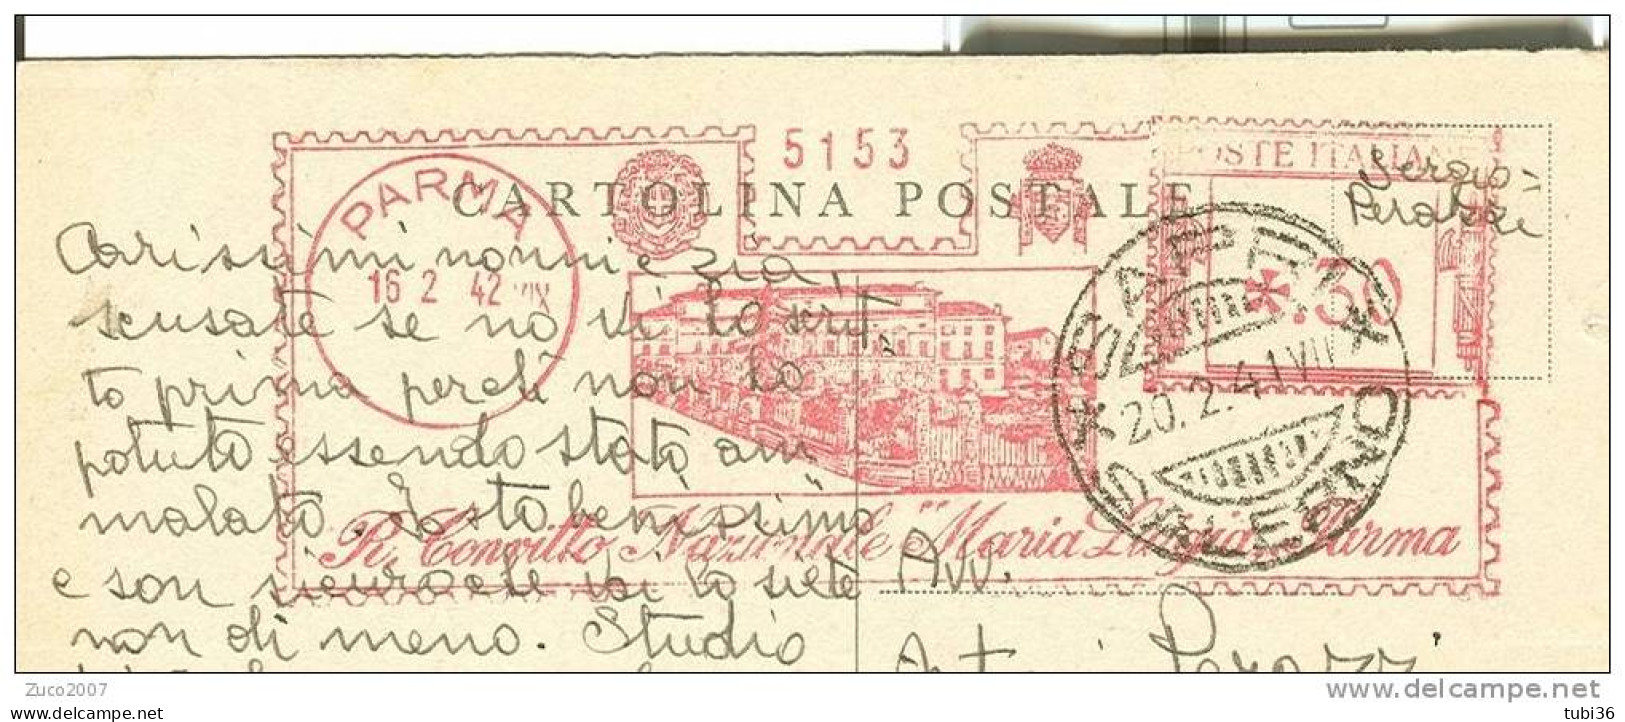 R. CONVITTO NAZIONALE MARIA LUIGIA PARMA - VIAGGIATO 1942 - TIMBRO ROSSO  16/2/1942 DA PARMA A SAPRI (SALERNO). - Reclame